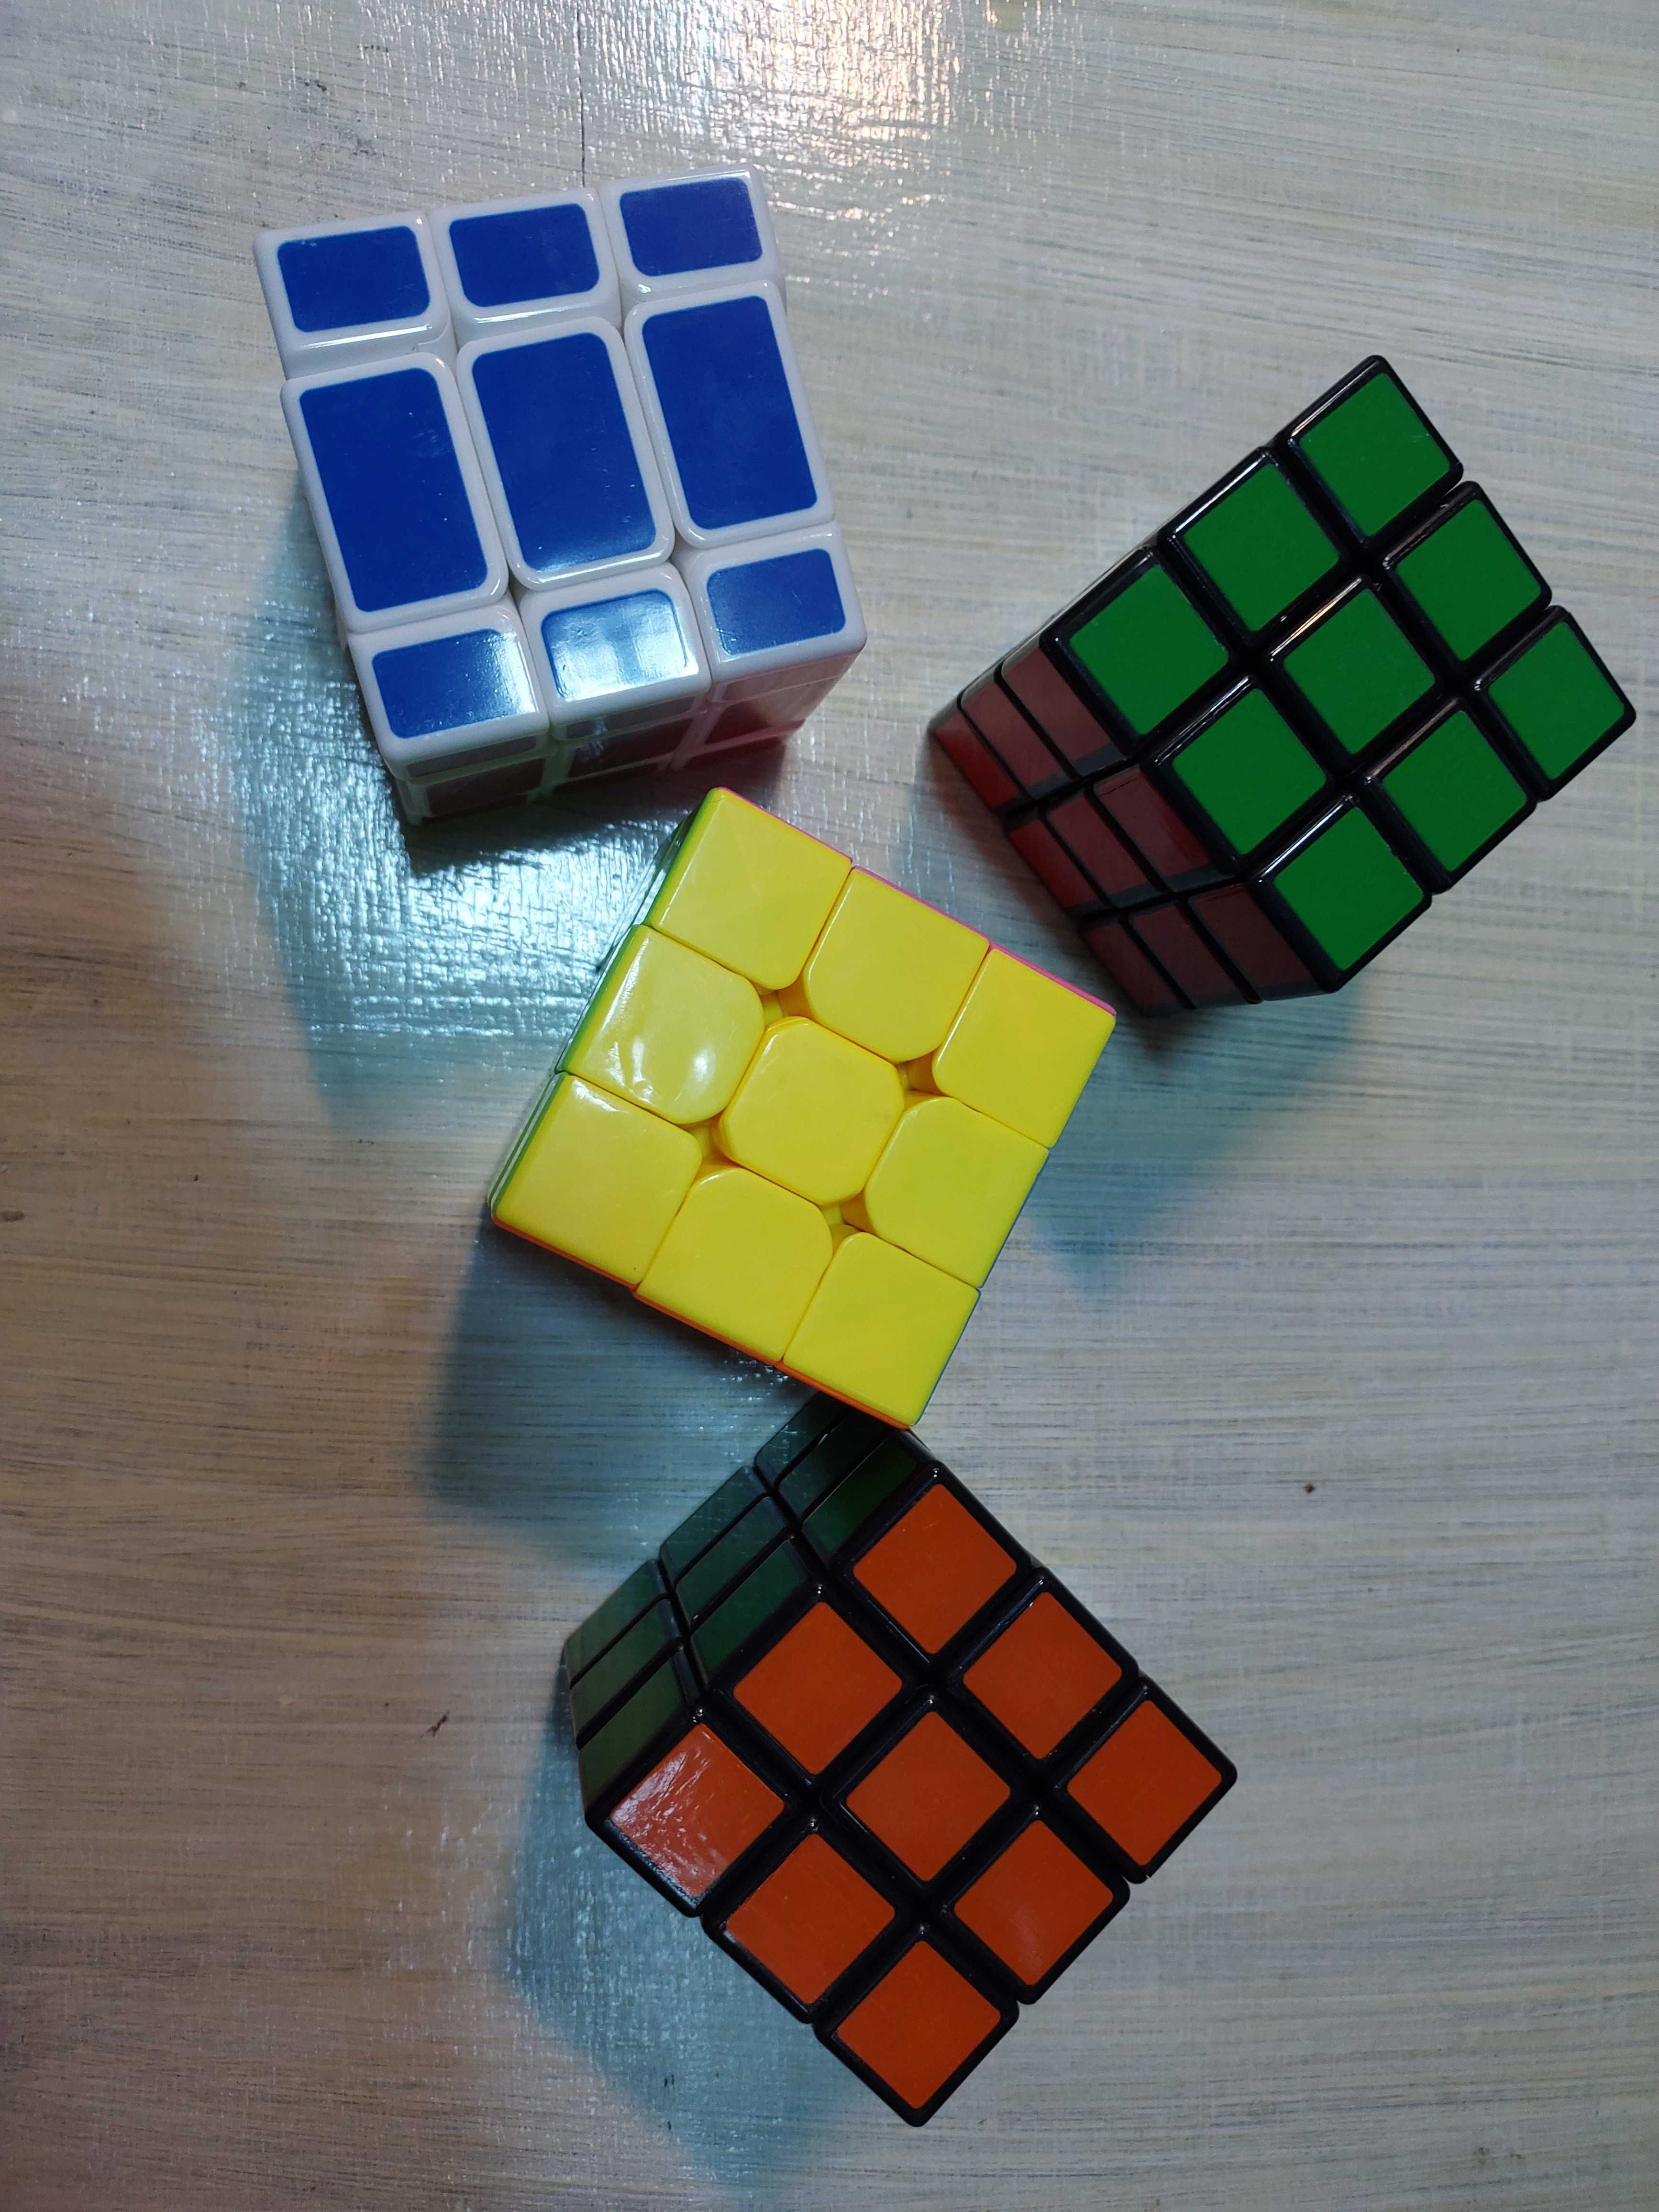 Cub Rubic Rubikub